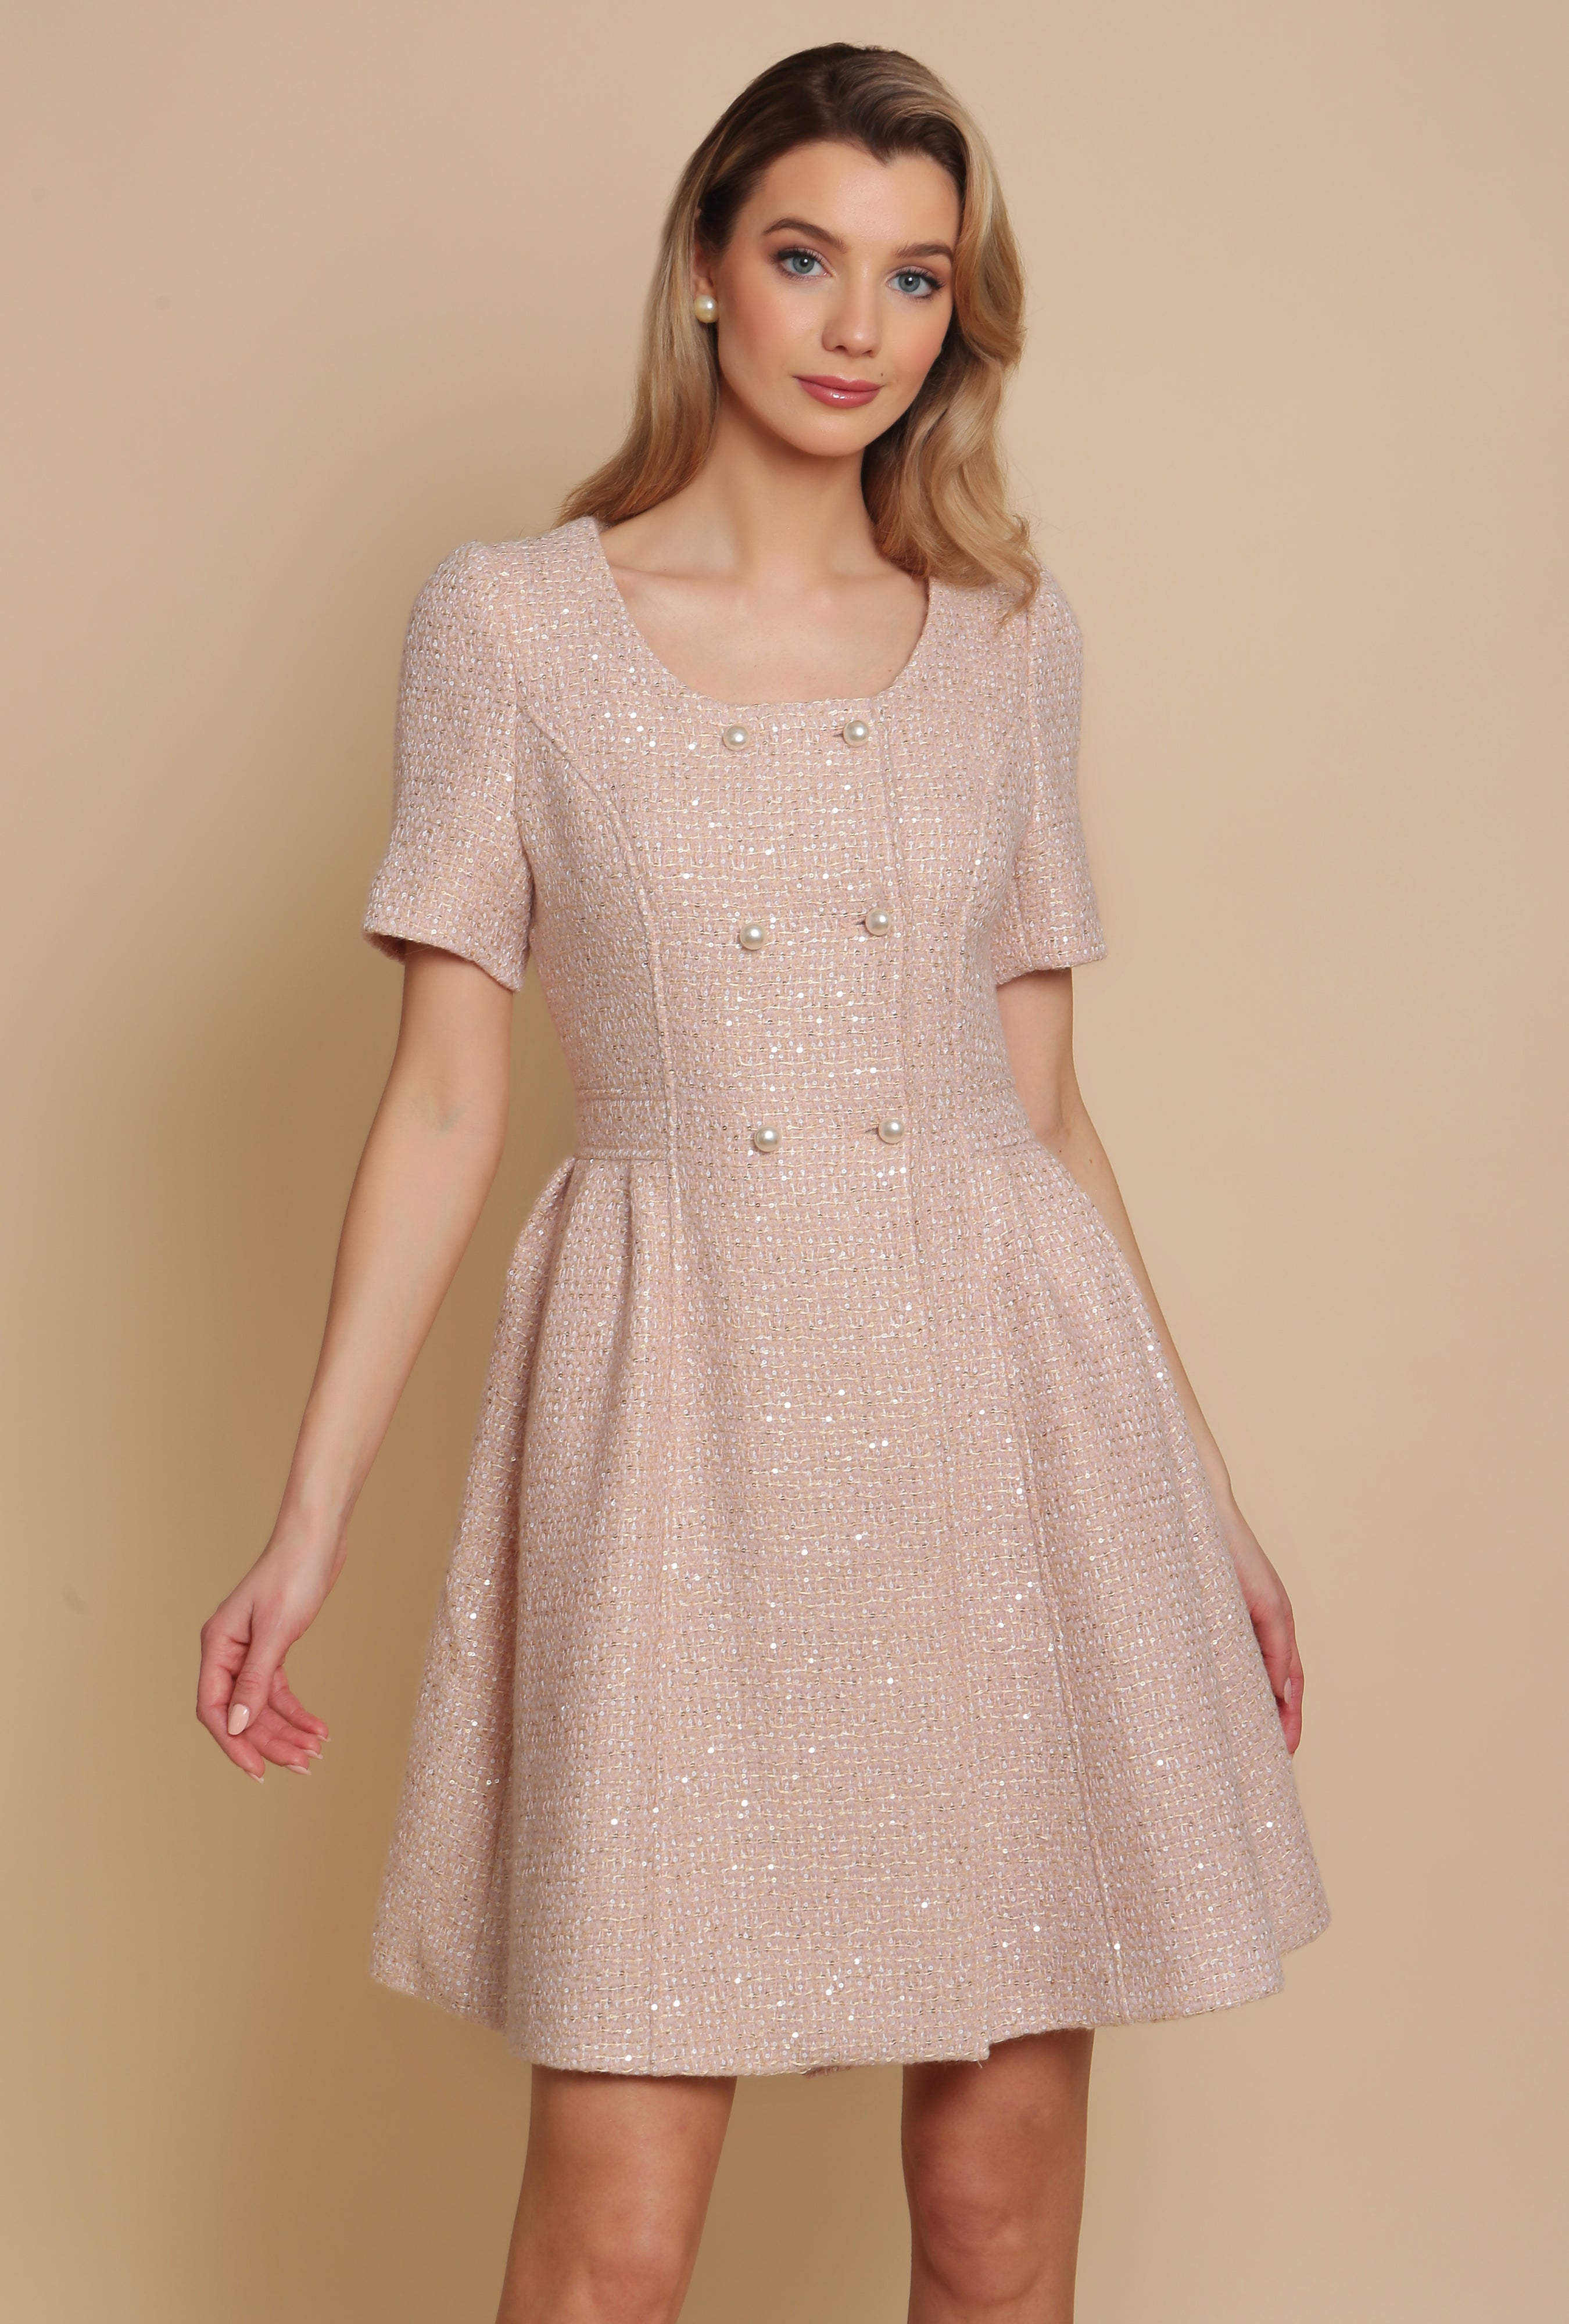 'Golden Age' Wool Tweed Dress Coat in Rosa